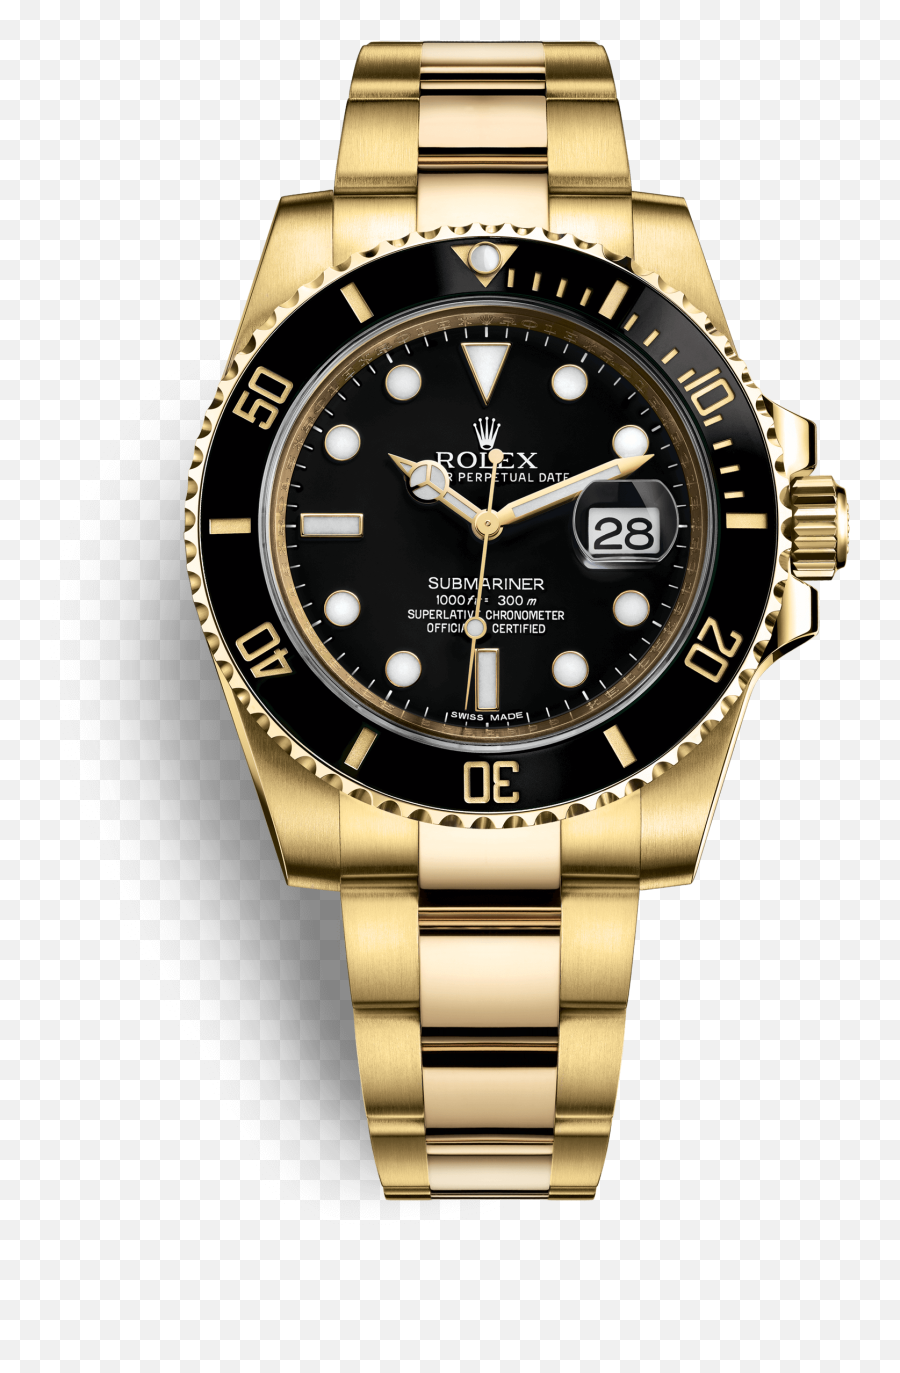 Submariner Watch Rolex Gold Colored - Two Tone Submariner Black Emoji,Find The Emoji Rolex